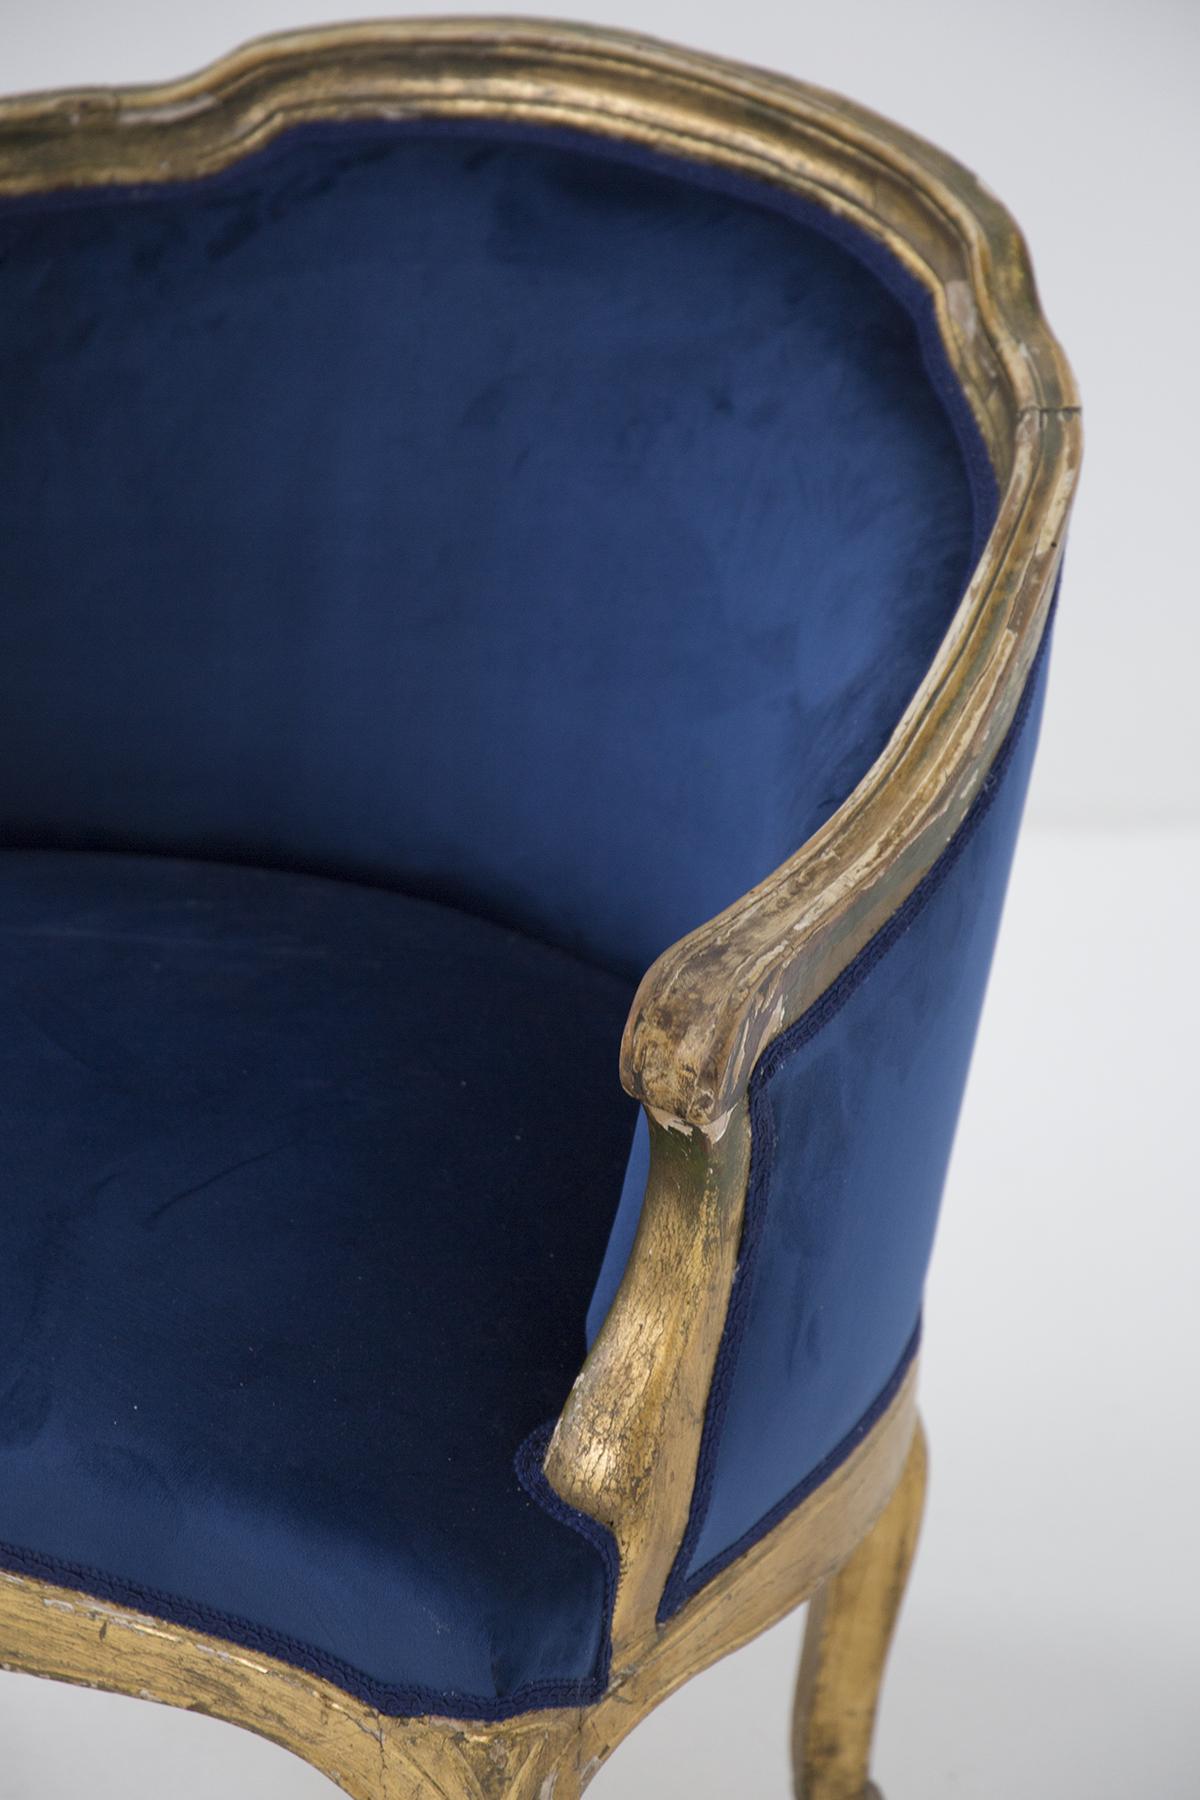 Exzentrischer antiker Sessel aus Vergoldung und Samt aus den späten 1800er und frühen 1900er Jahren, feine italienische Herstellung.
Der Sessel hat ein Gestell aus gebogenem, vergoldetem Holz, sehr elegant und sehr pompös.
Die Formen sind sehr